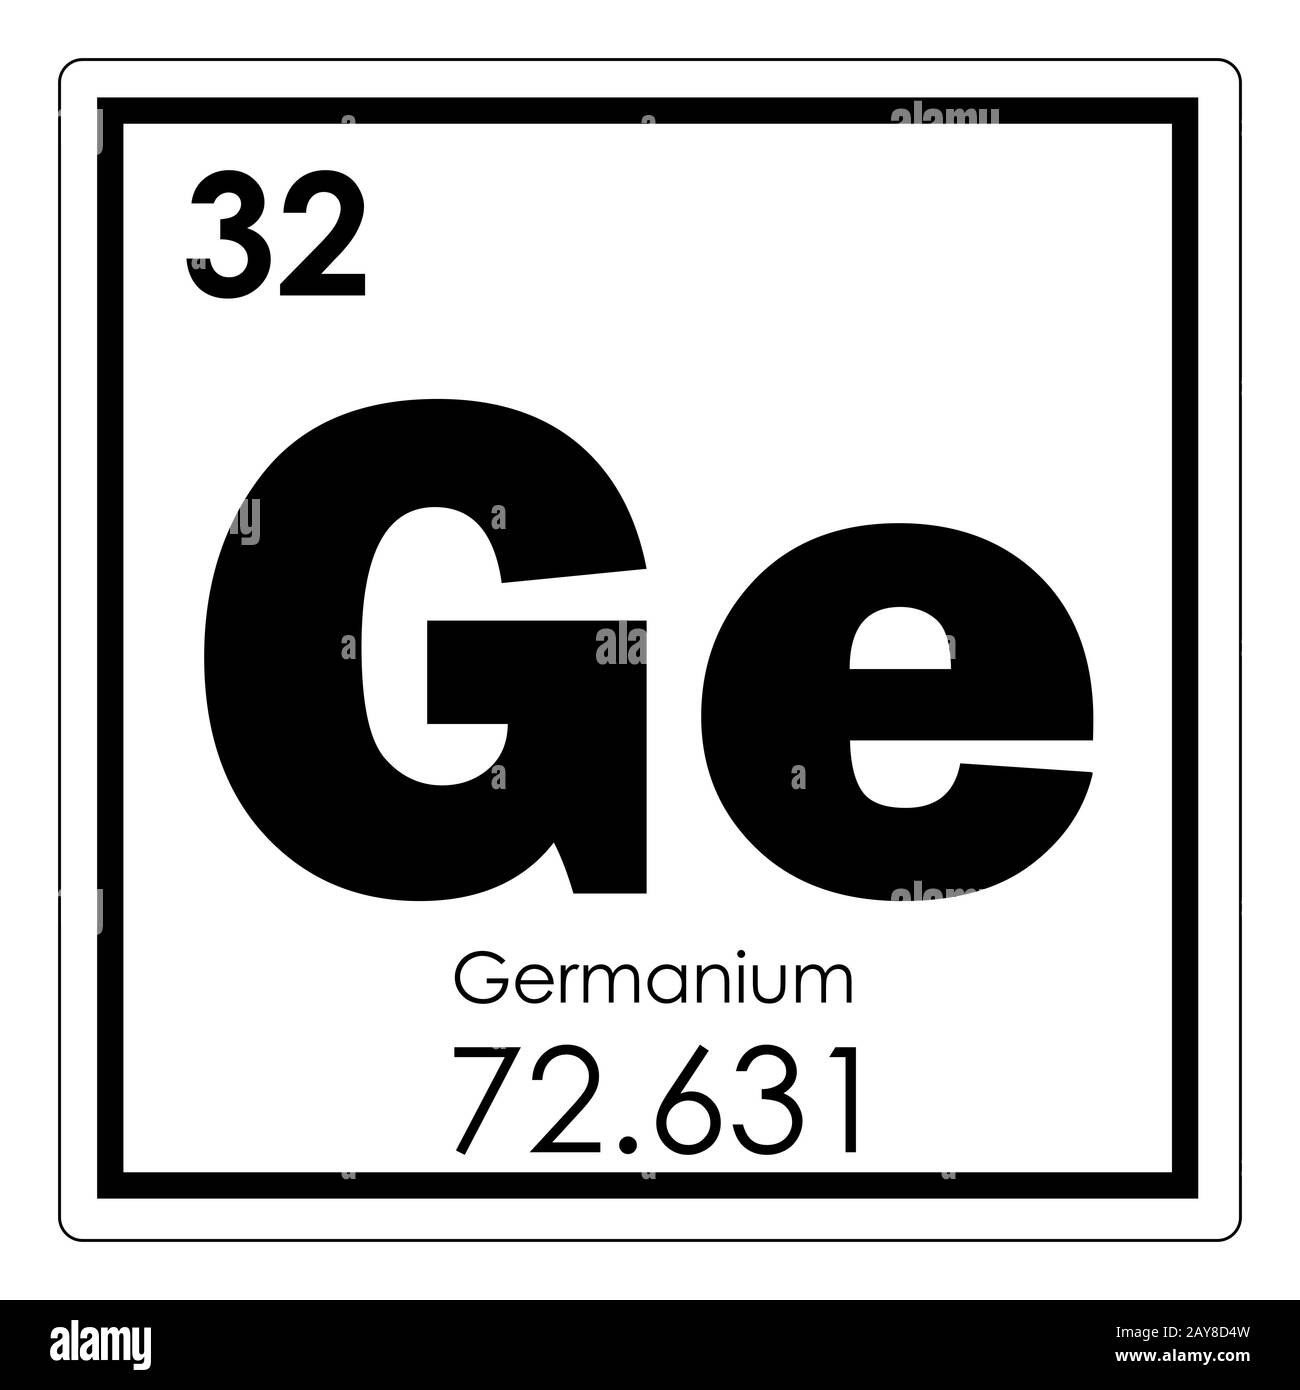 Elemento químico germanio Foto de stock